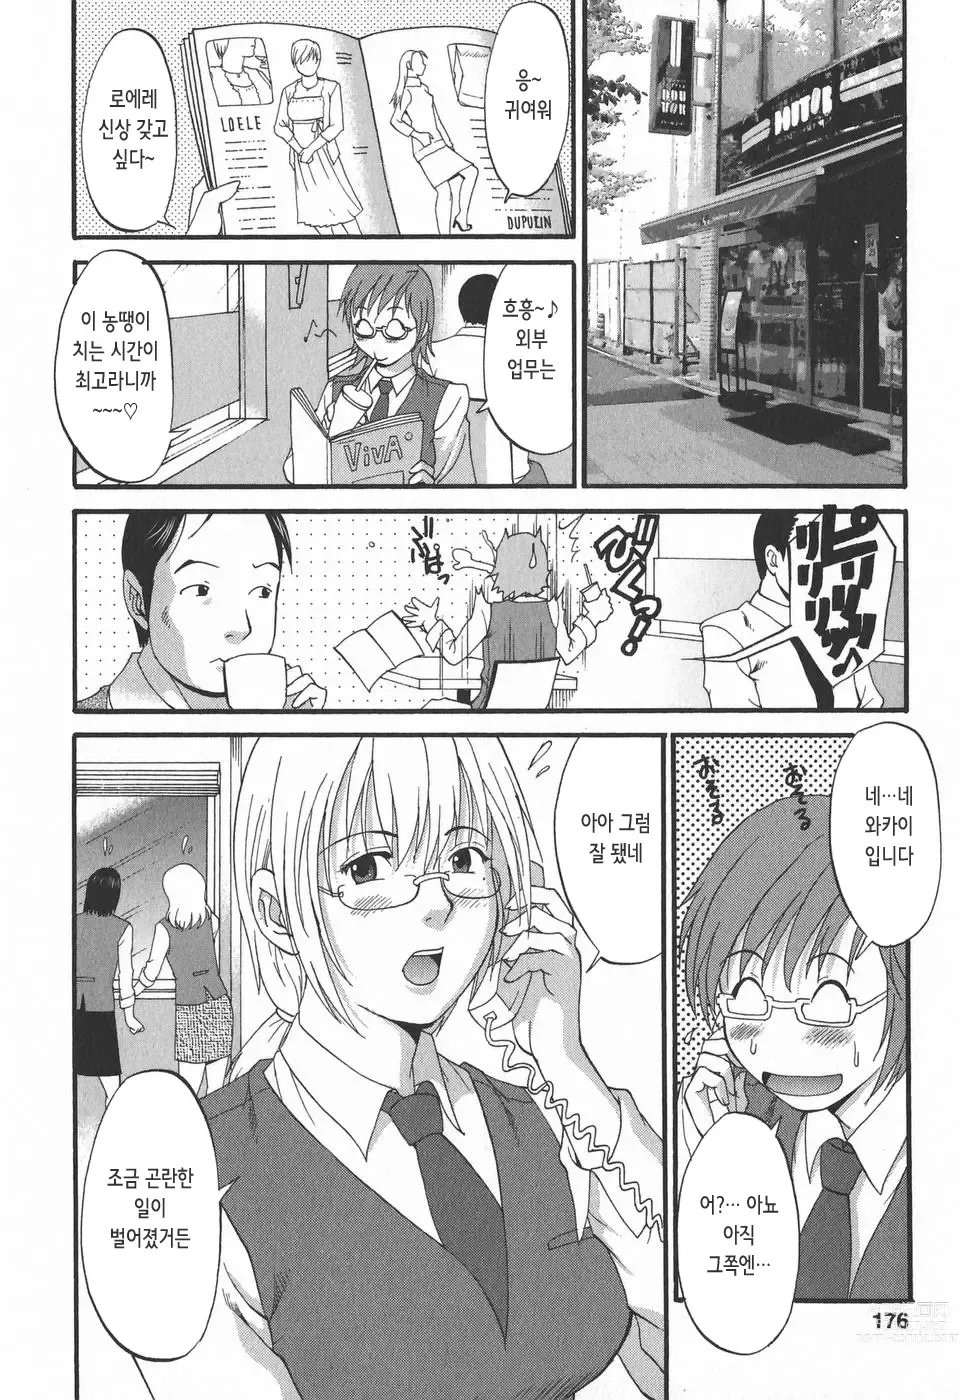 Page 177 of doujinshi 하나 씨의 휴일 2